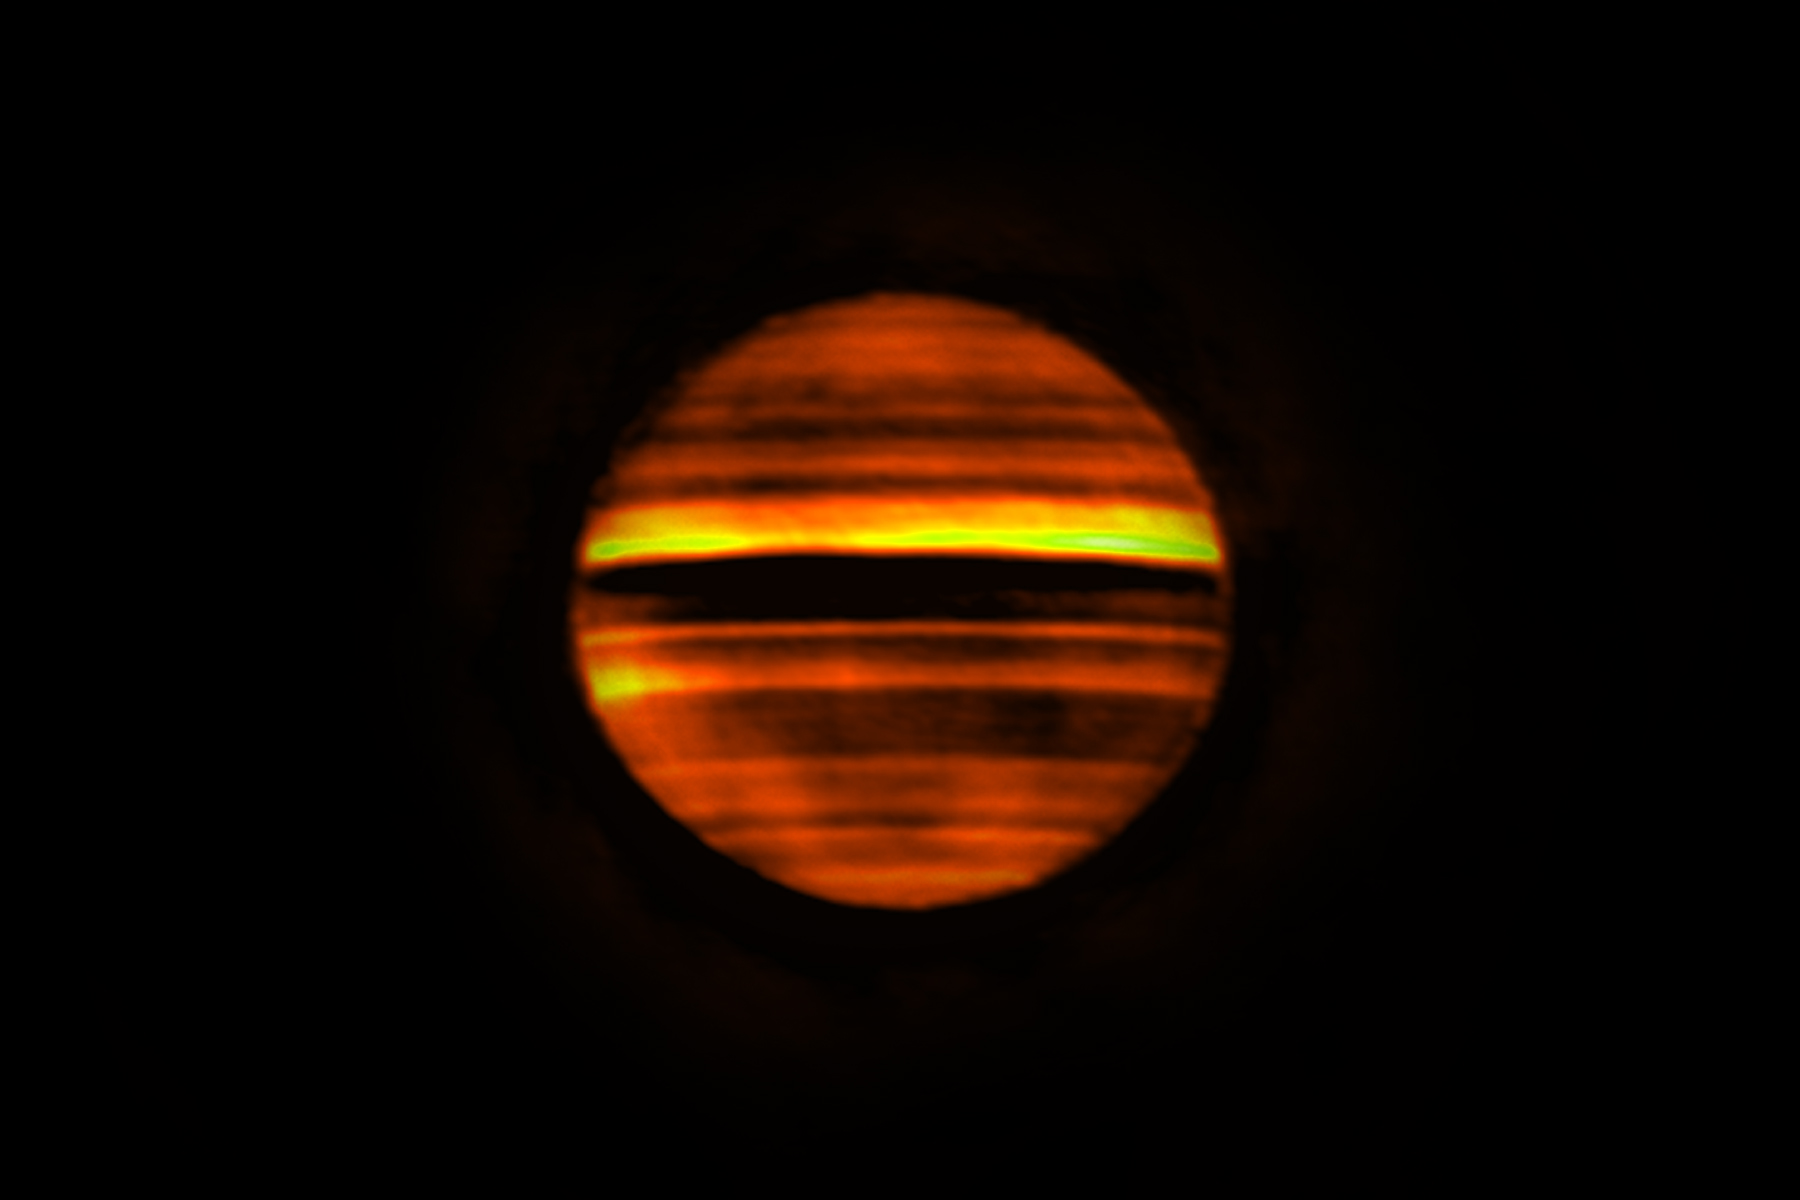 Voici en fausses couleurs une image radio de Jupiter réalisée avec Alma. Les bandes lumineuses indiquent les températures élevées et les bandes sombres les températures basses. Les bandes sombres correspondent aux zones sur Jupiter, qui sont souvent blanches aux longueurs d'onde visibles. Les bandes lumineuses correspondent aux ceintures brunes de la planète. Cette image contient plus de 10 heures de données, soit le temps que met Jupiter pour effectuer sa rotation. Par conséquent, la combinaison de ces données trahit la rotation de la planète qui a rendu les détails flous. © Alma (ESO/NAOJ/NRAO), I. de Pater et al.; NRAO/AUI NSF, S. Dagnello